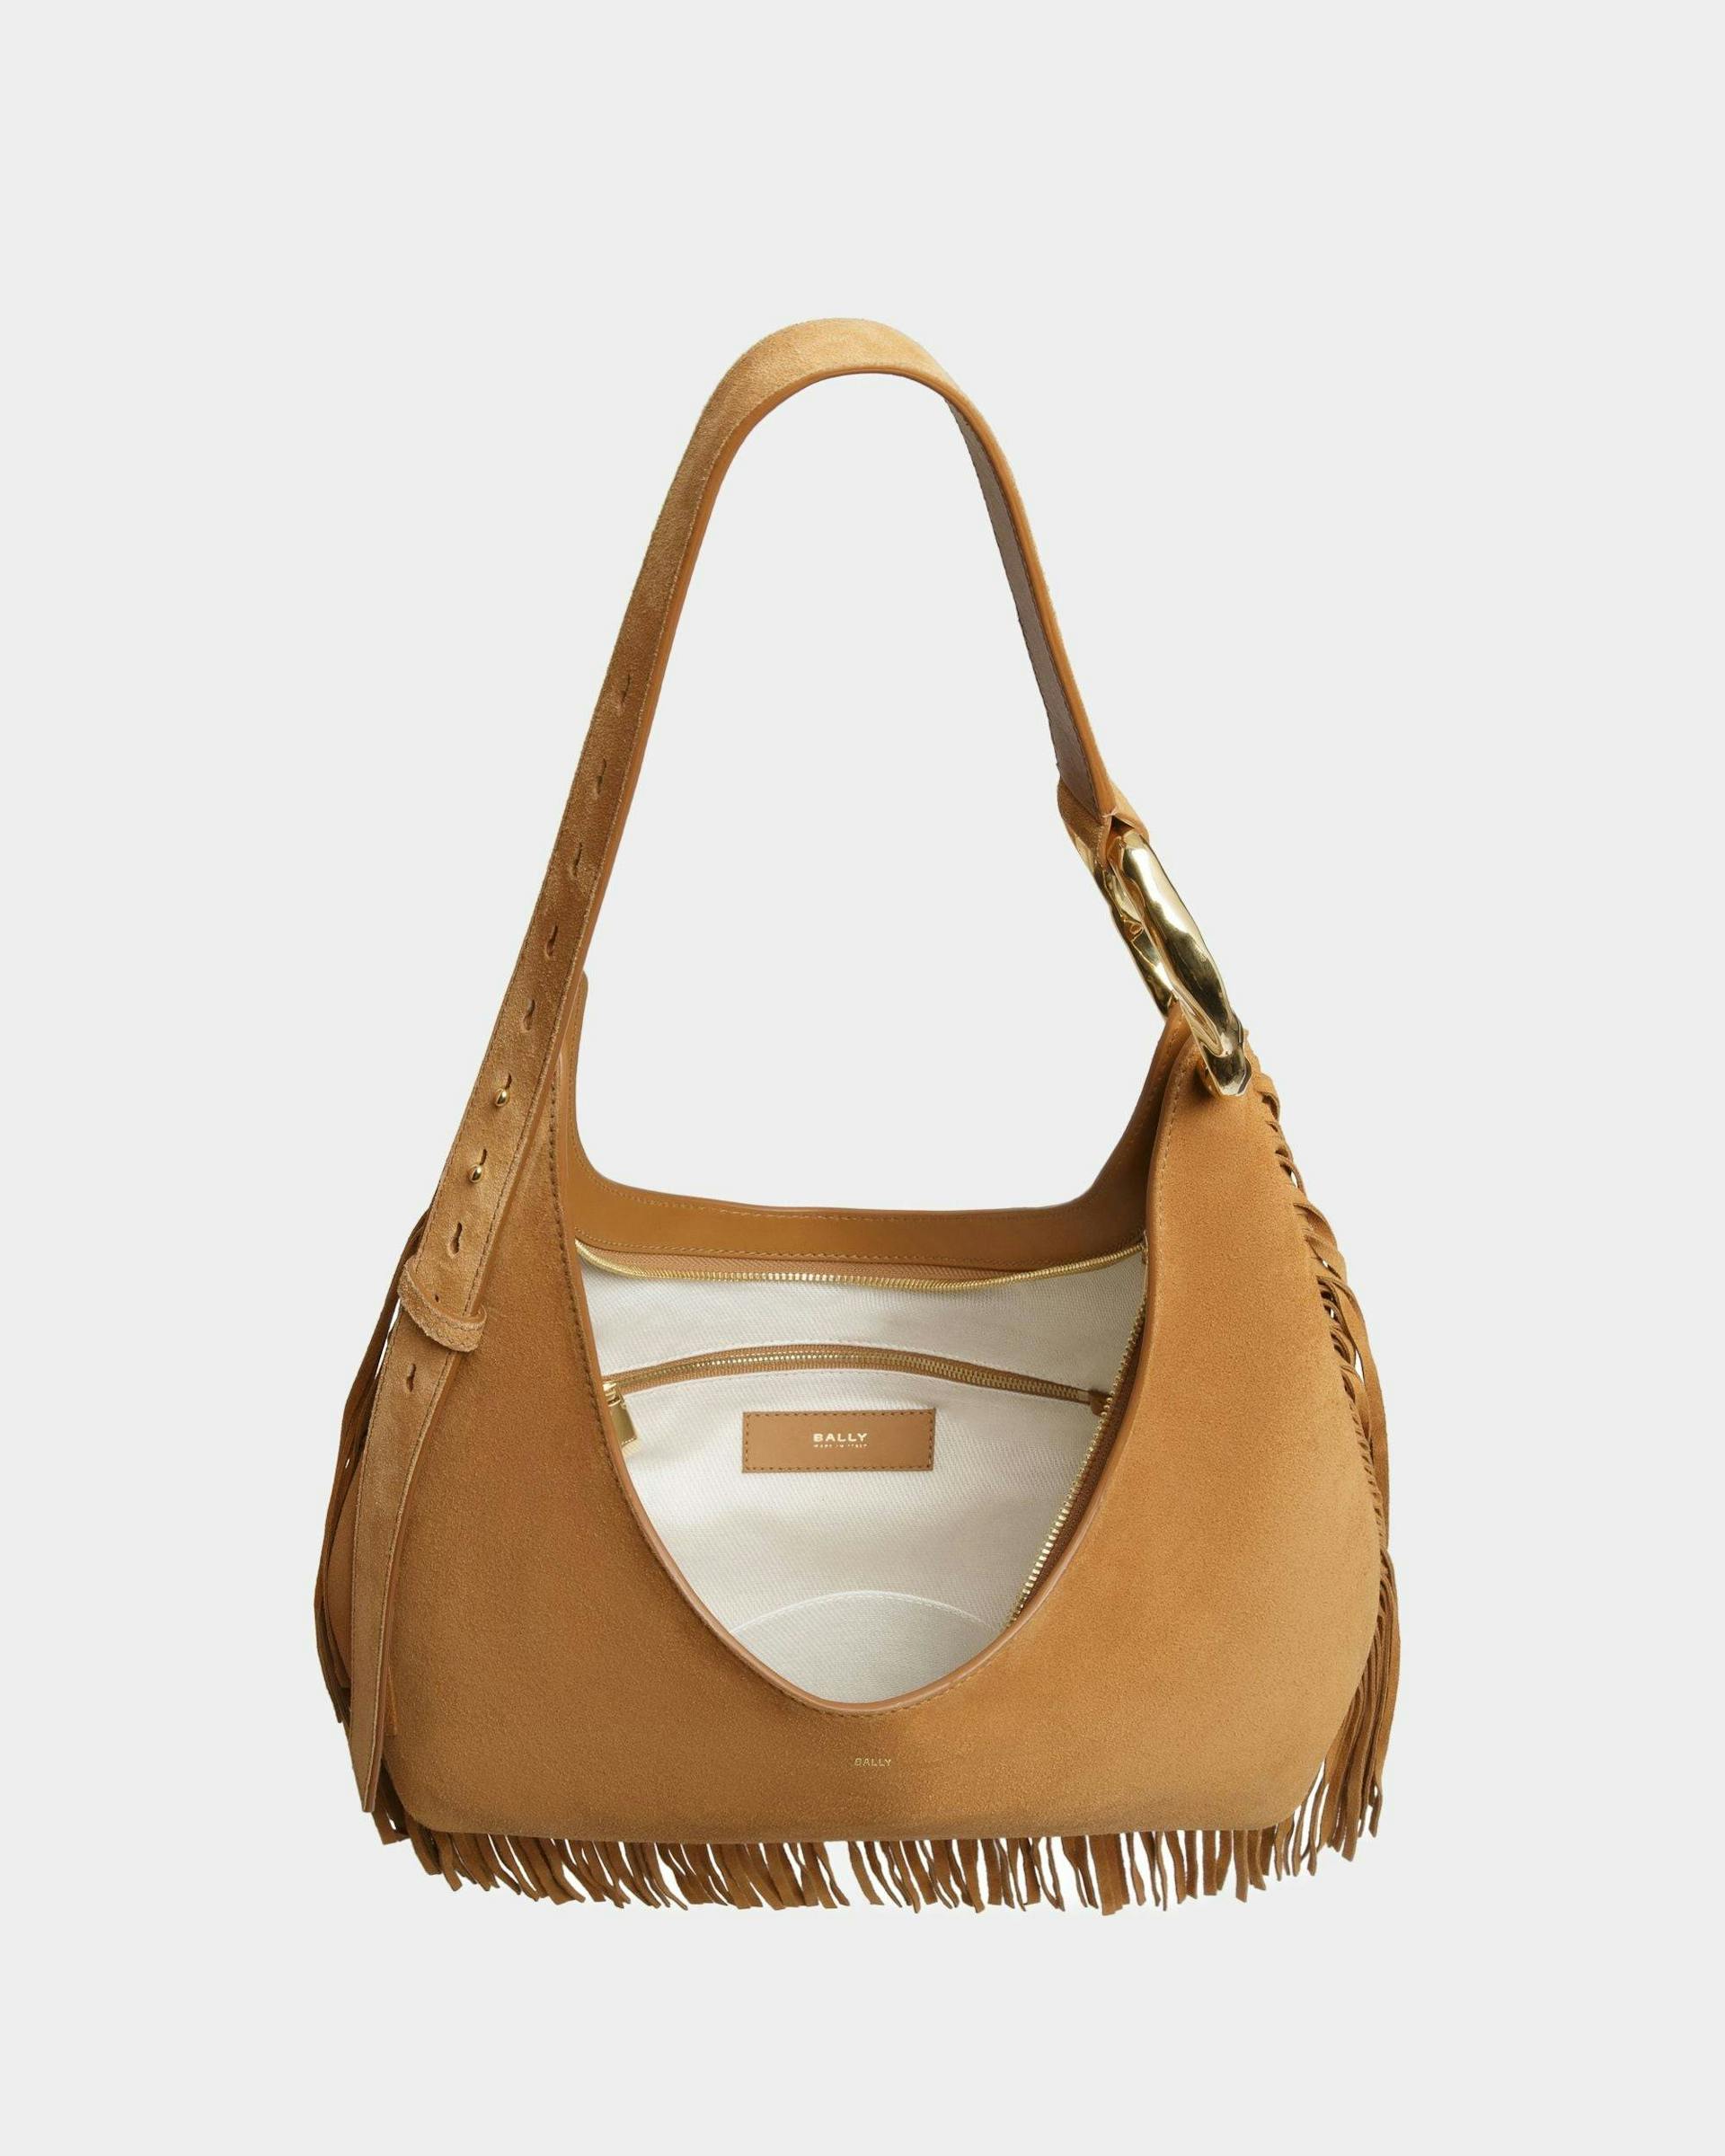 Baroque Hobo Bag In Desert Leather - Women's - Bally - 05